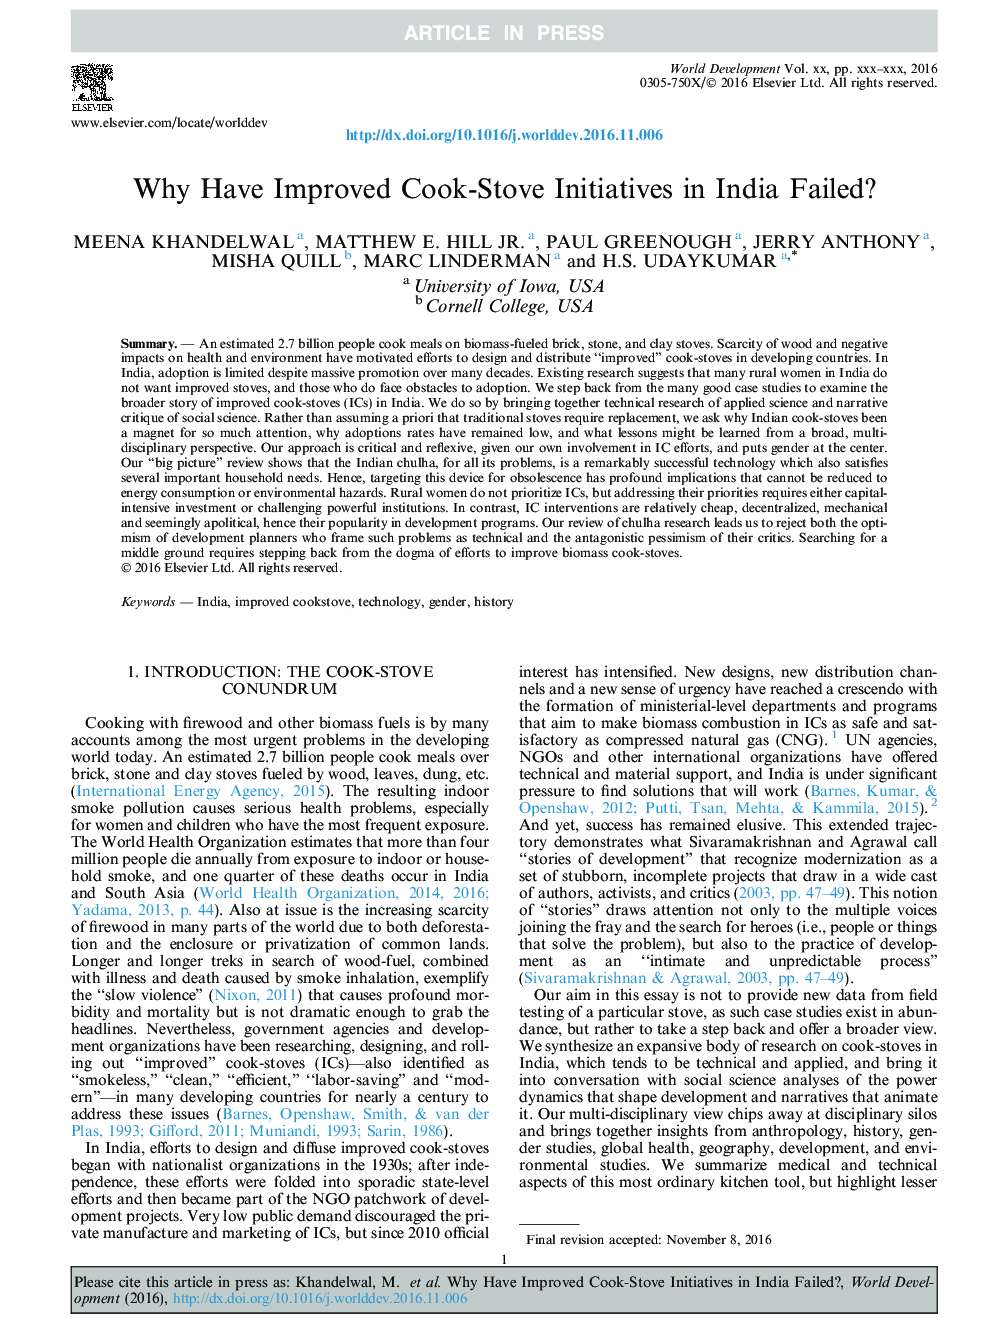 چرا ابتکارات کوک بخار در هند بهبود یافته است؟ 